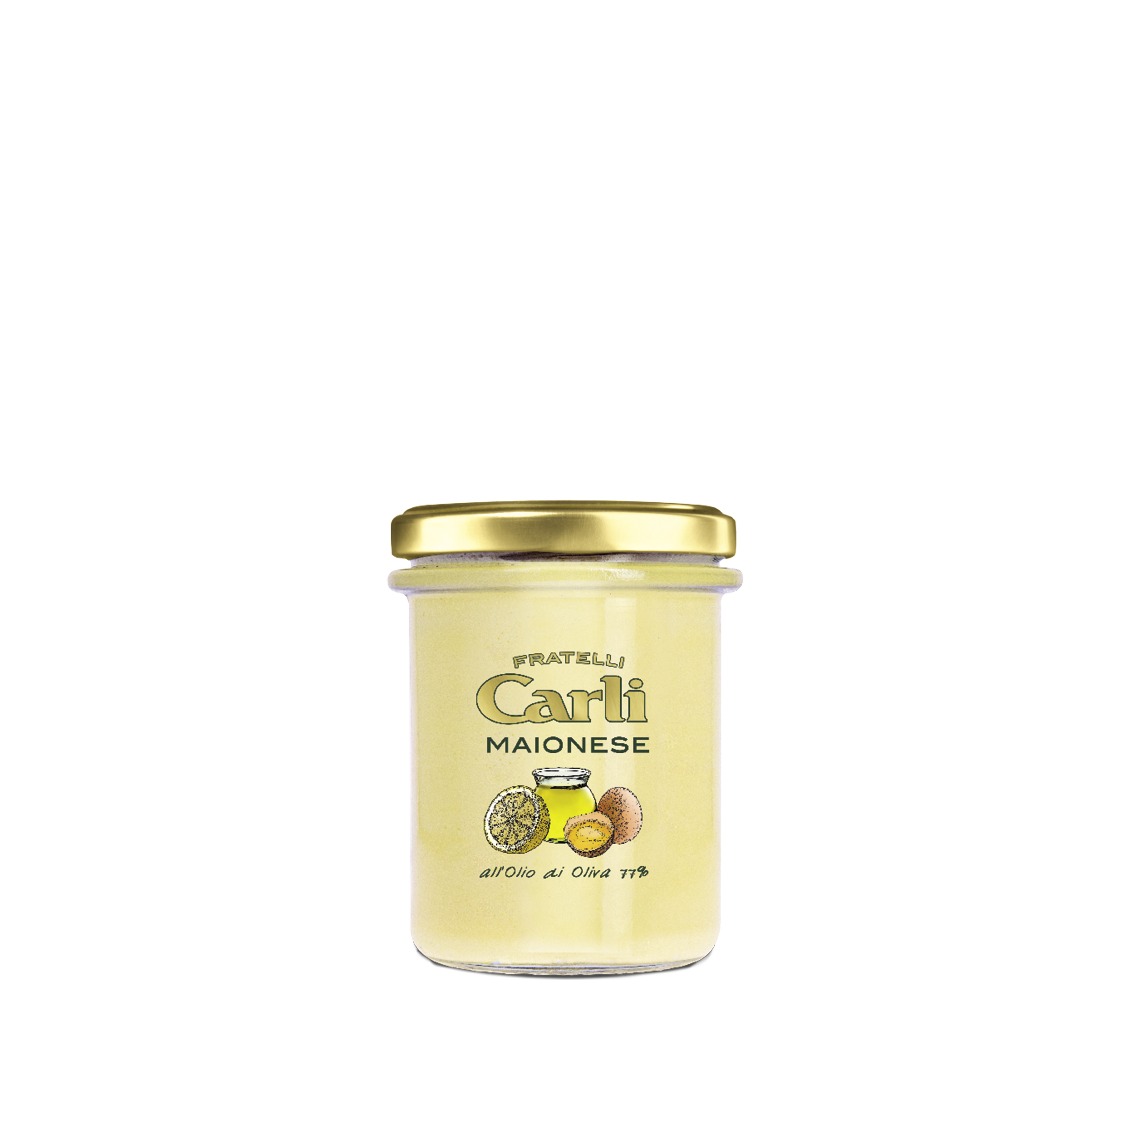 Mayonnaise mit Olivenöl